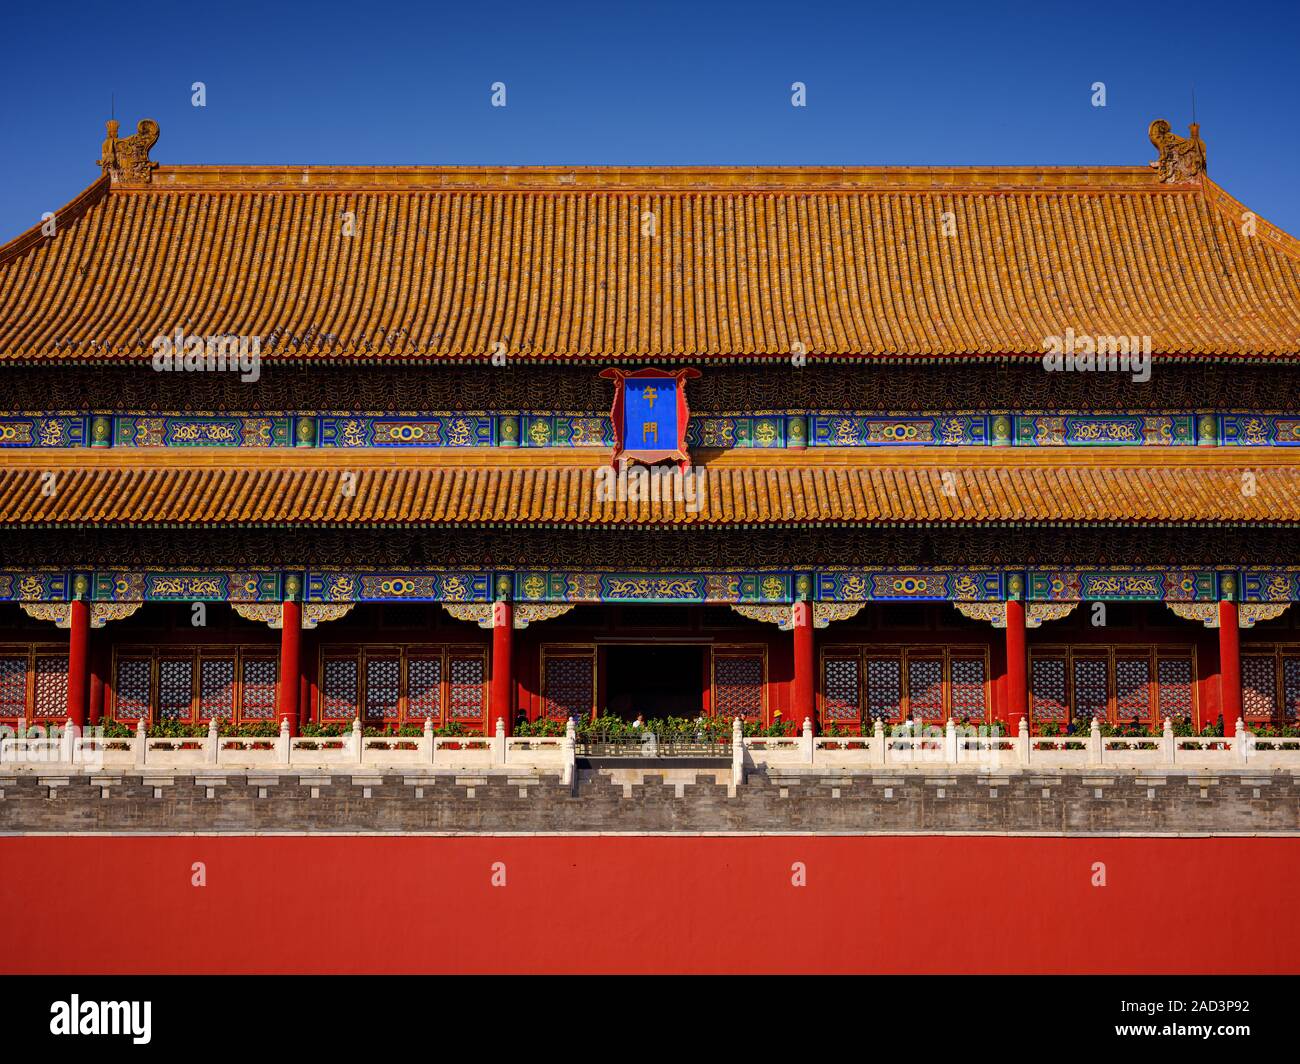 Musée du Palais de Beijing, autrefois connue comme la Cité Interdite, est situé dans le centre de Beijing Banque D'Images